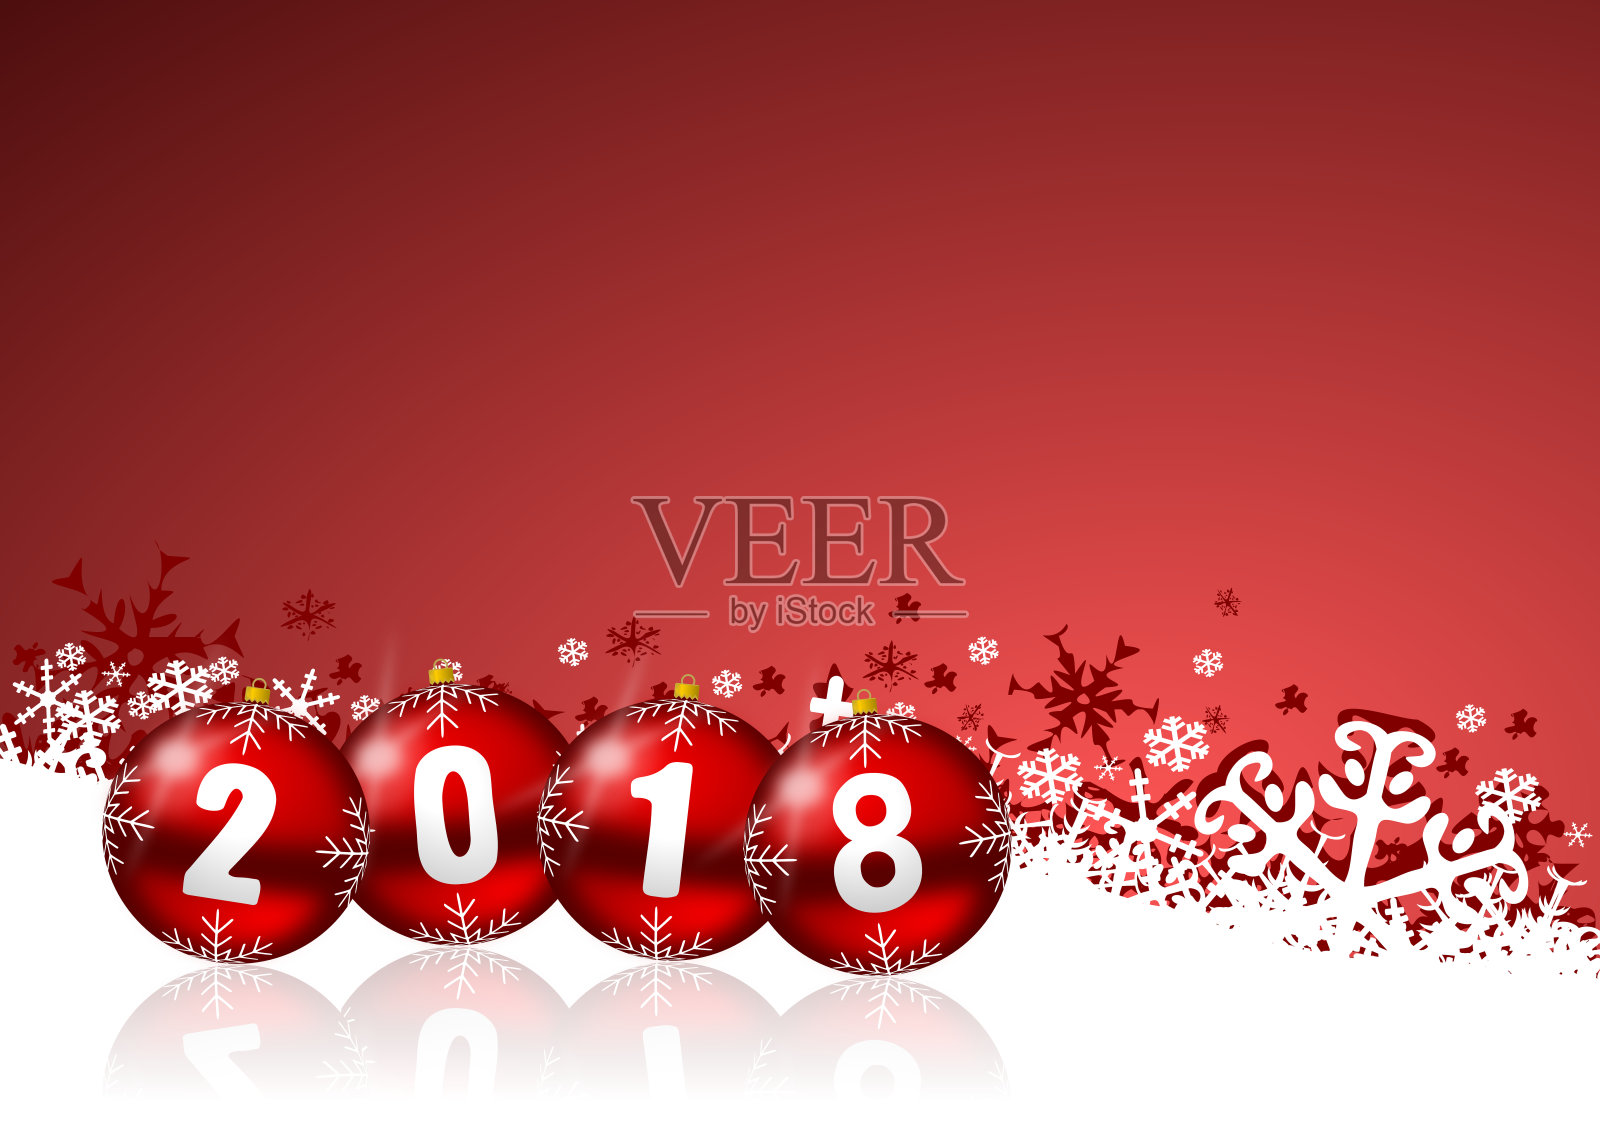 2018年的新年背景是圣诞球和雪花。设计模板素材